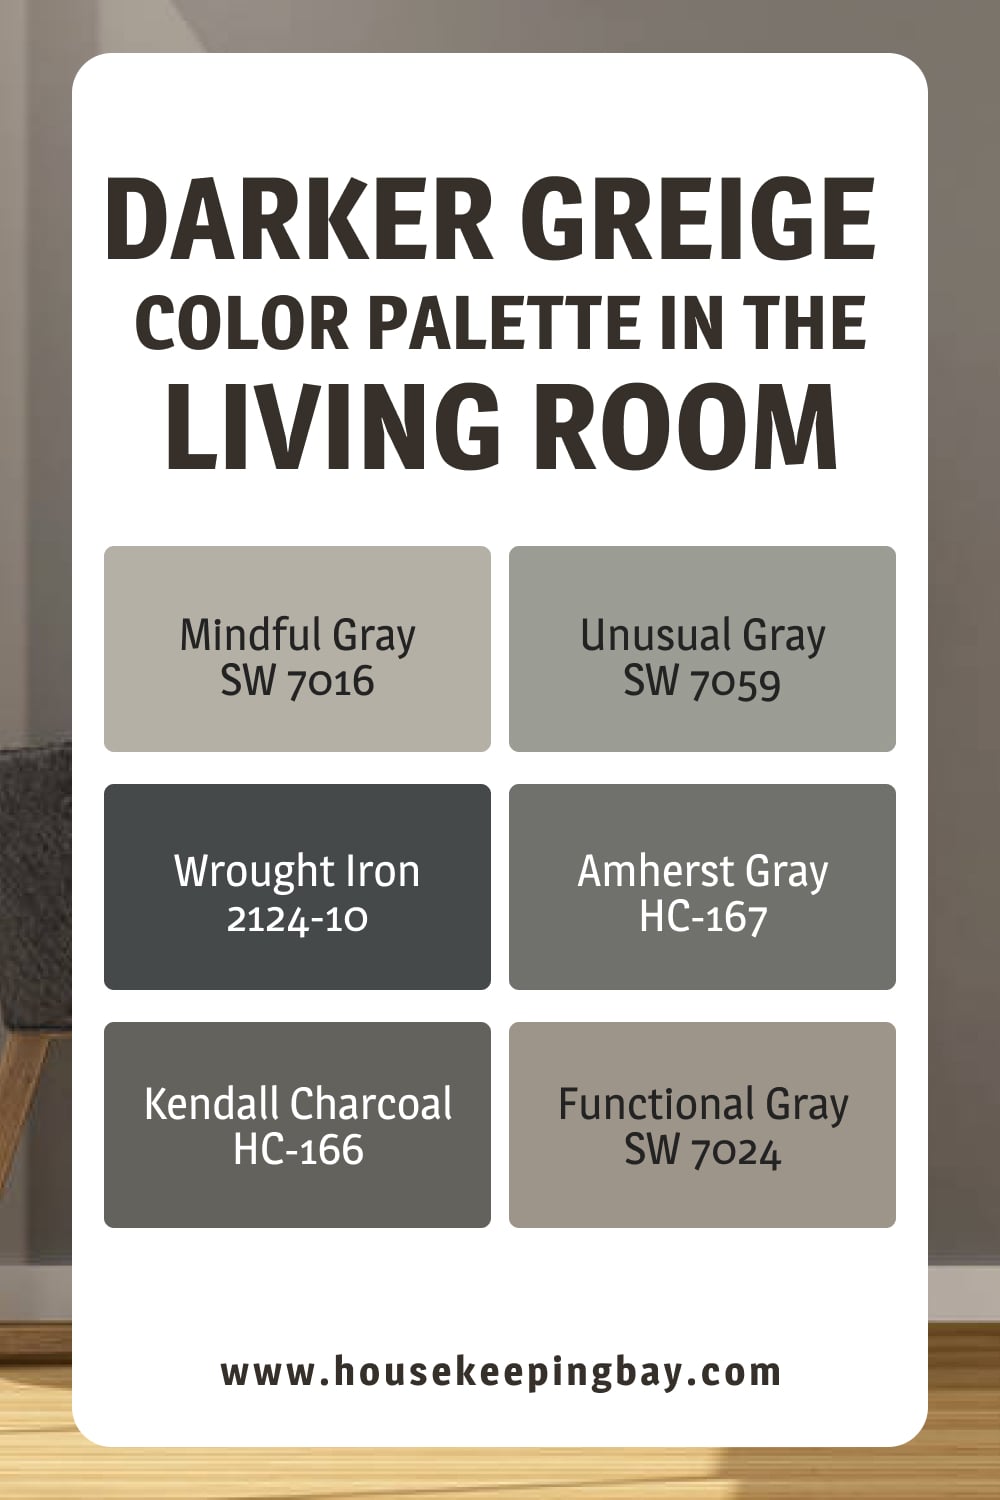 Darker Greige Color Palette in the Living Room